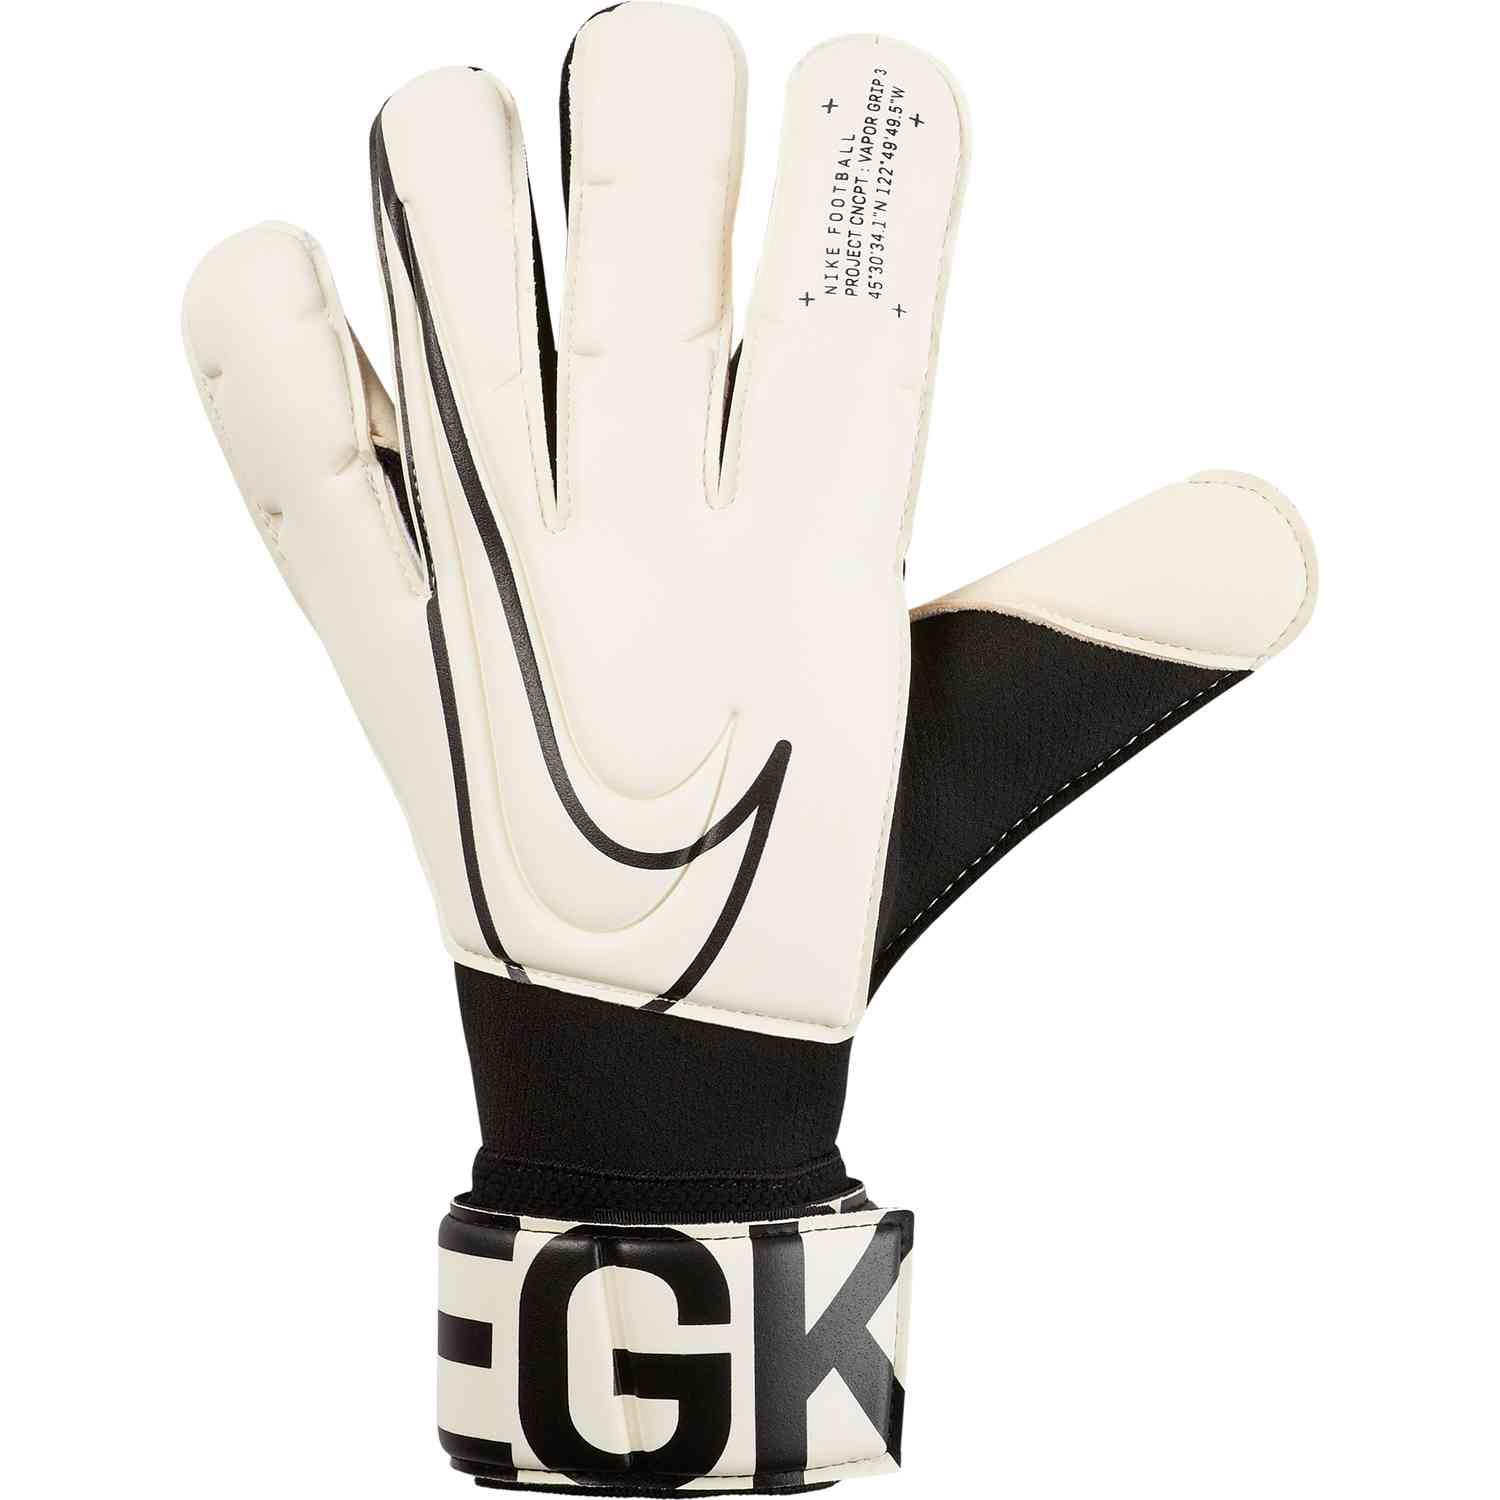 https://www.soccermaster.com/wp-content/uploads/gs3884_100_nike_vapor_grip3_gk_gloves_white_black_sm_02.jpg